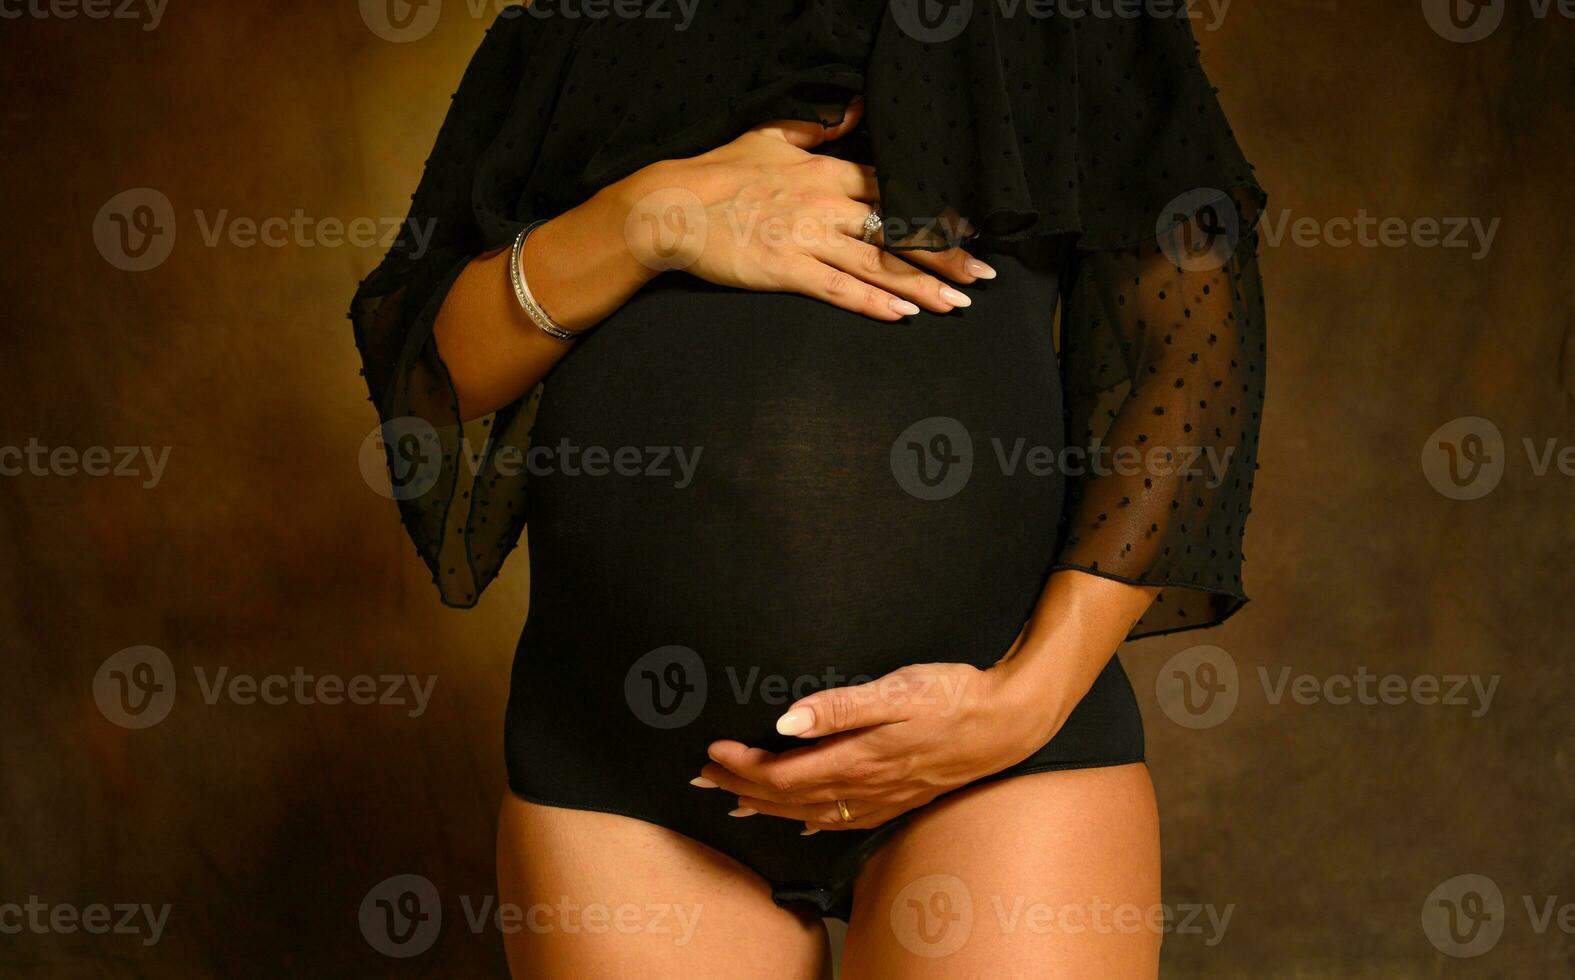 embarazada mujer esperando un niño caricias su barriga foto